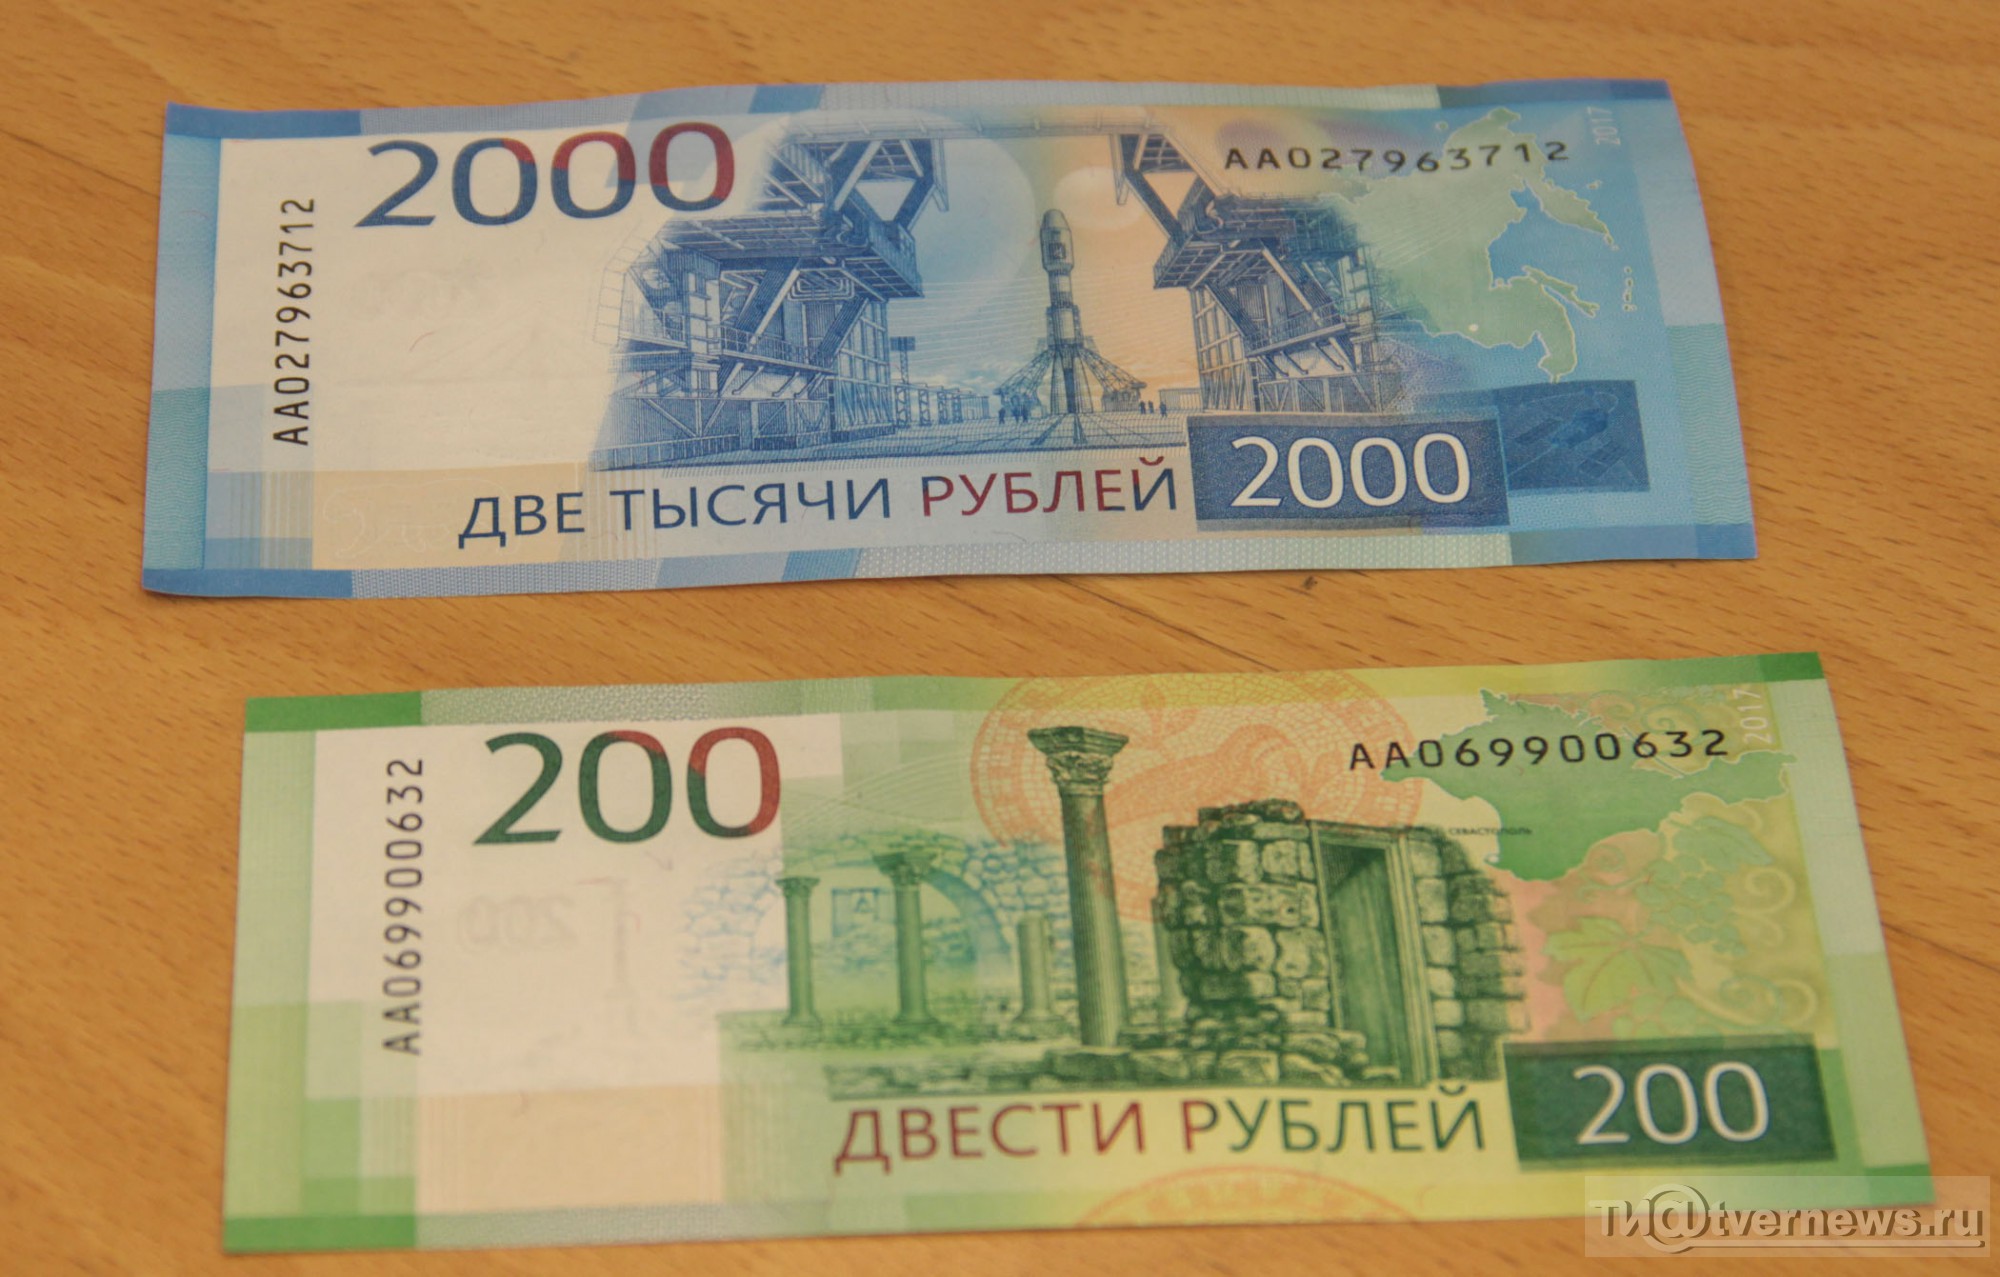 200 рублей на карту